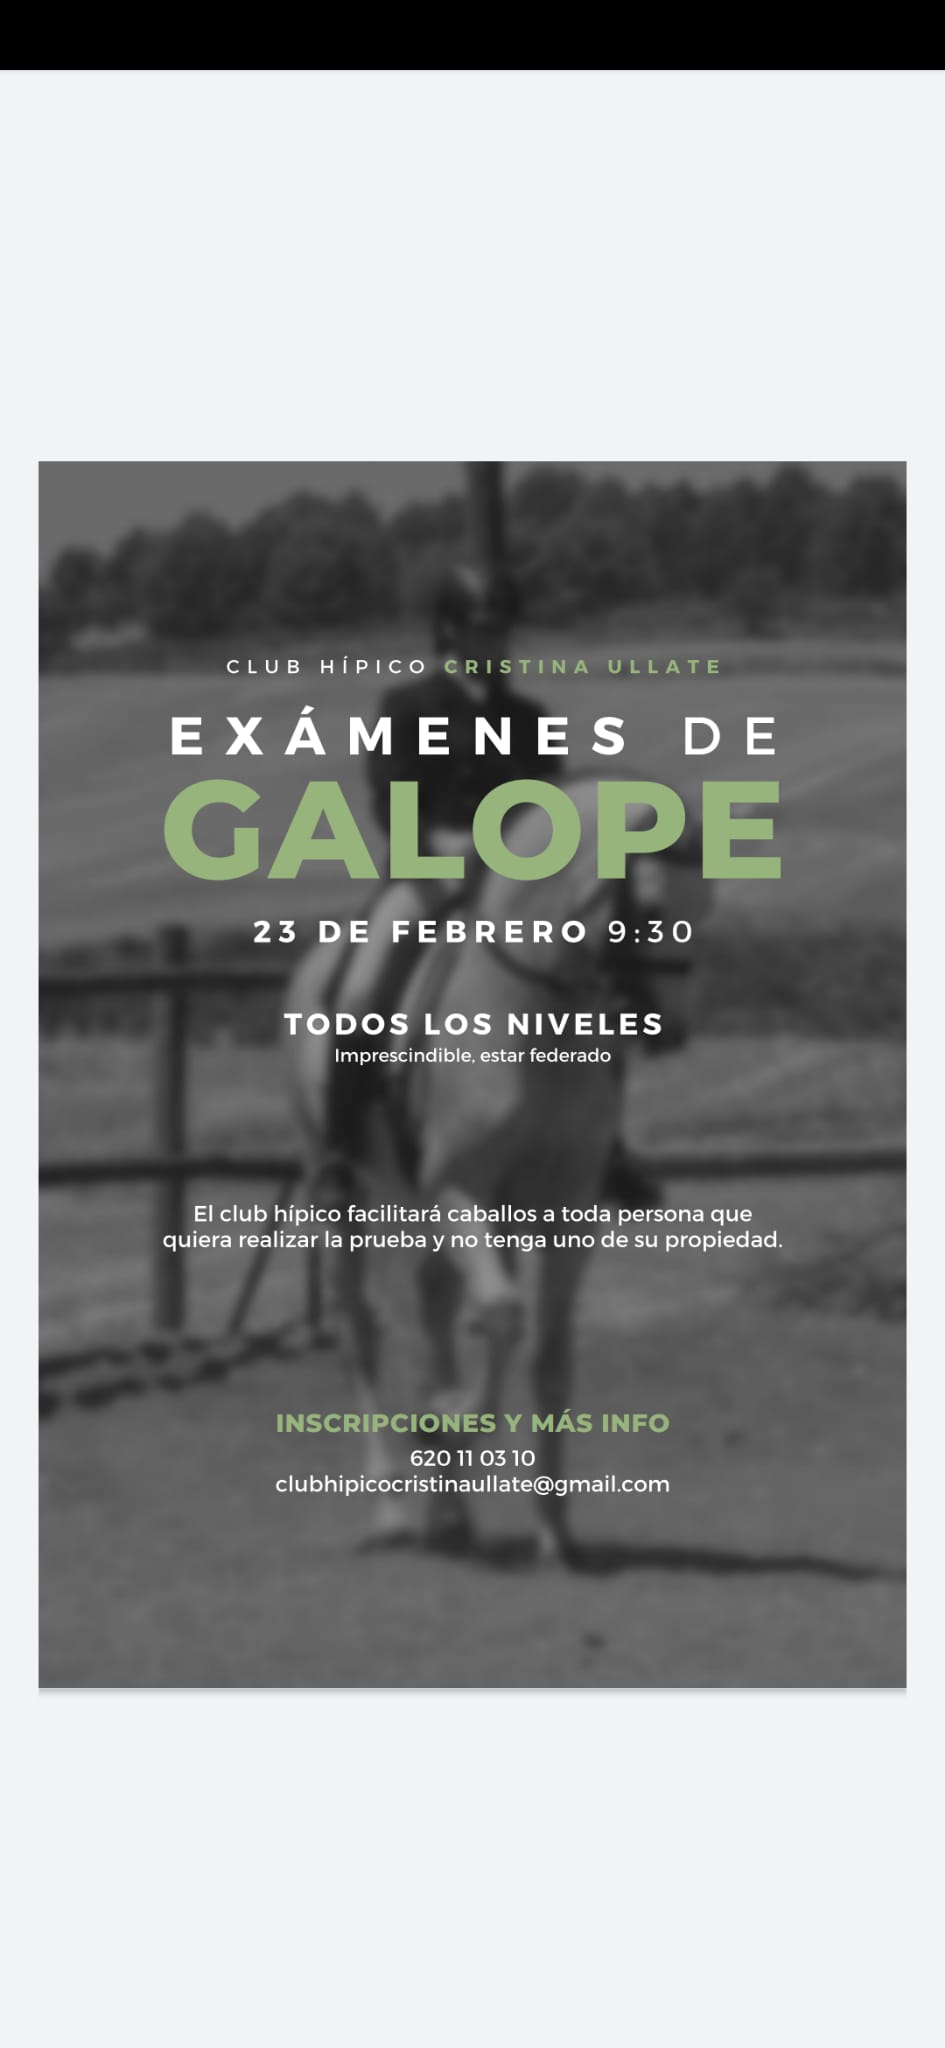 Próxima convocatoria de exámenes galopes el día 23 de febrero en el Club Hípico Cristina Ullate de Tafalla